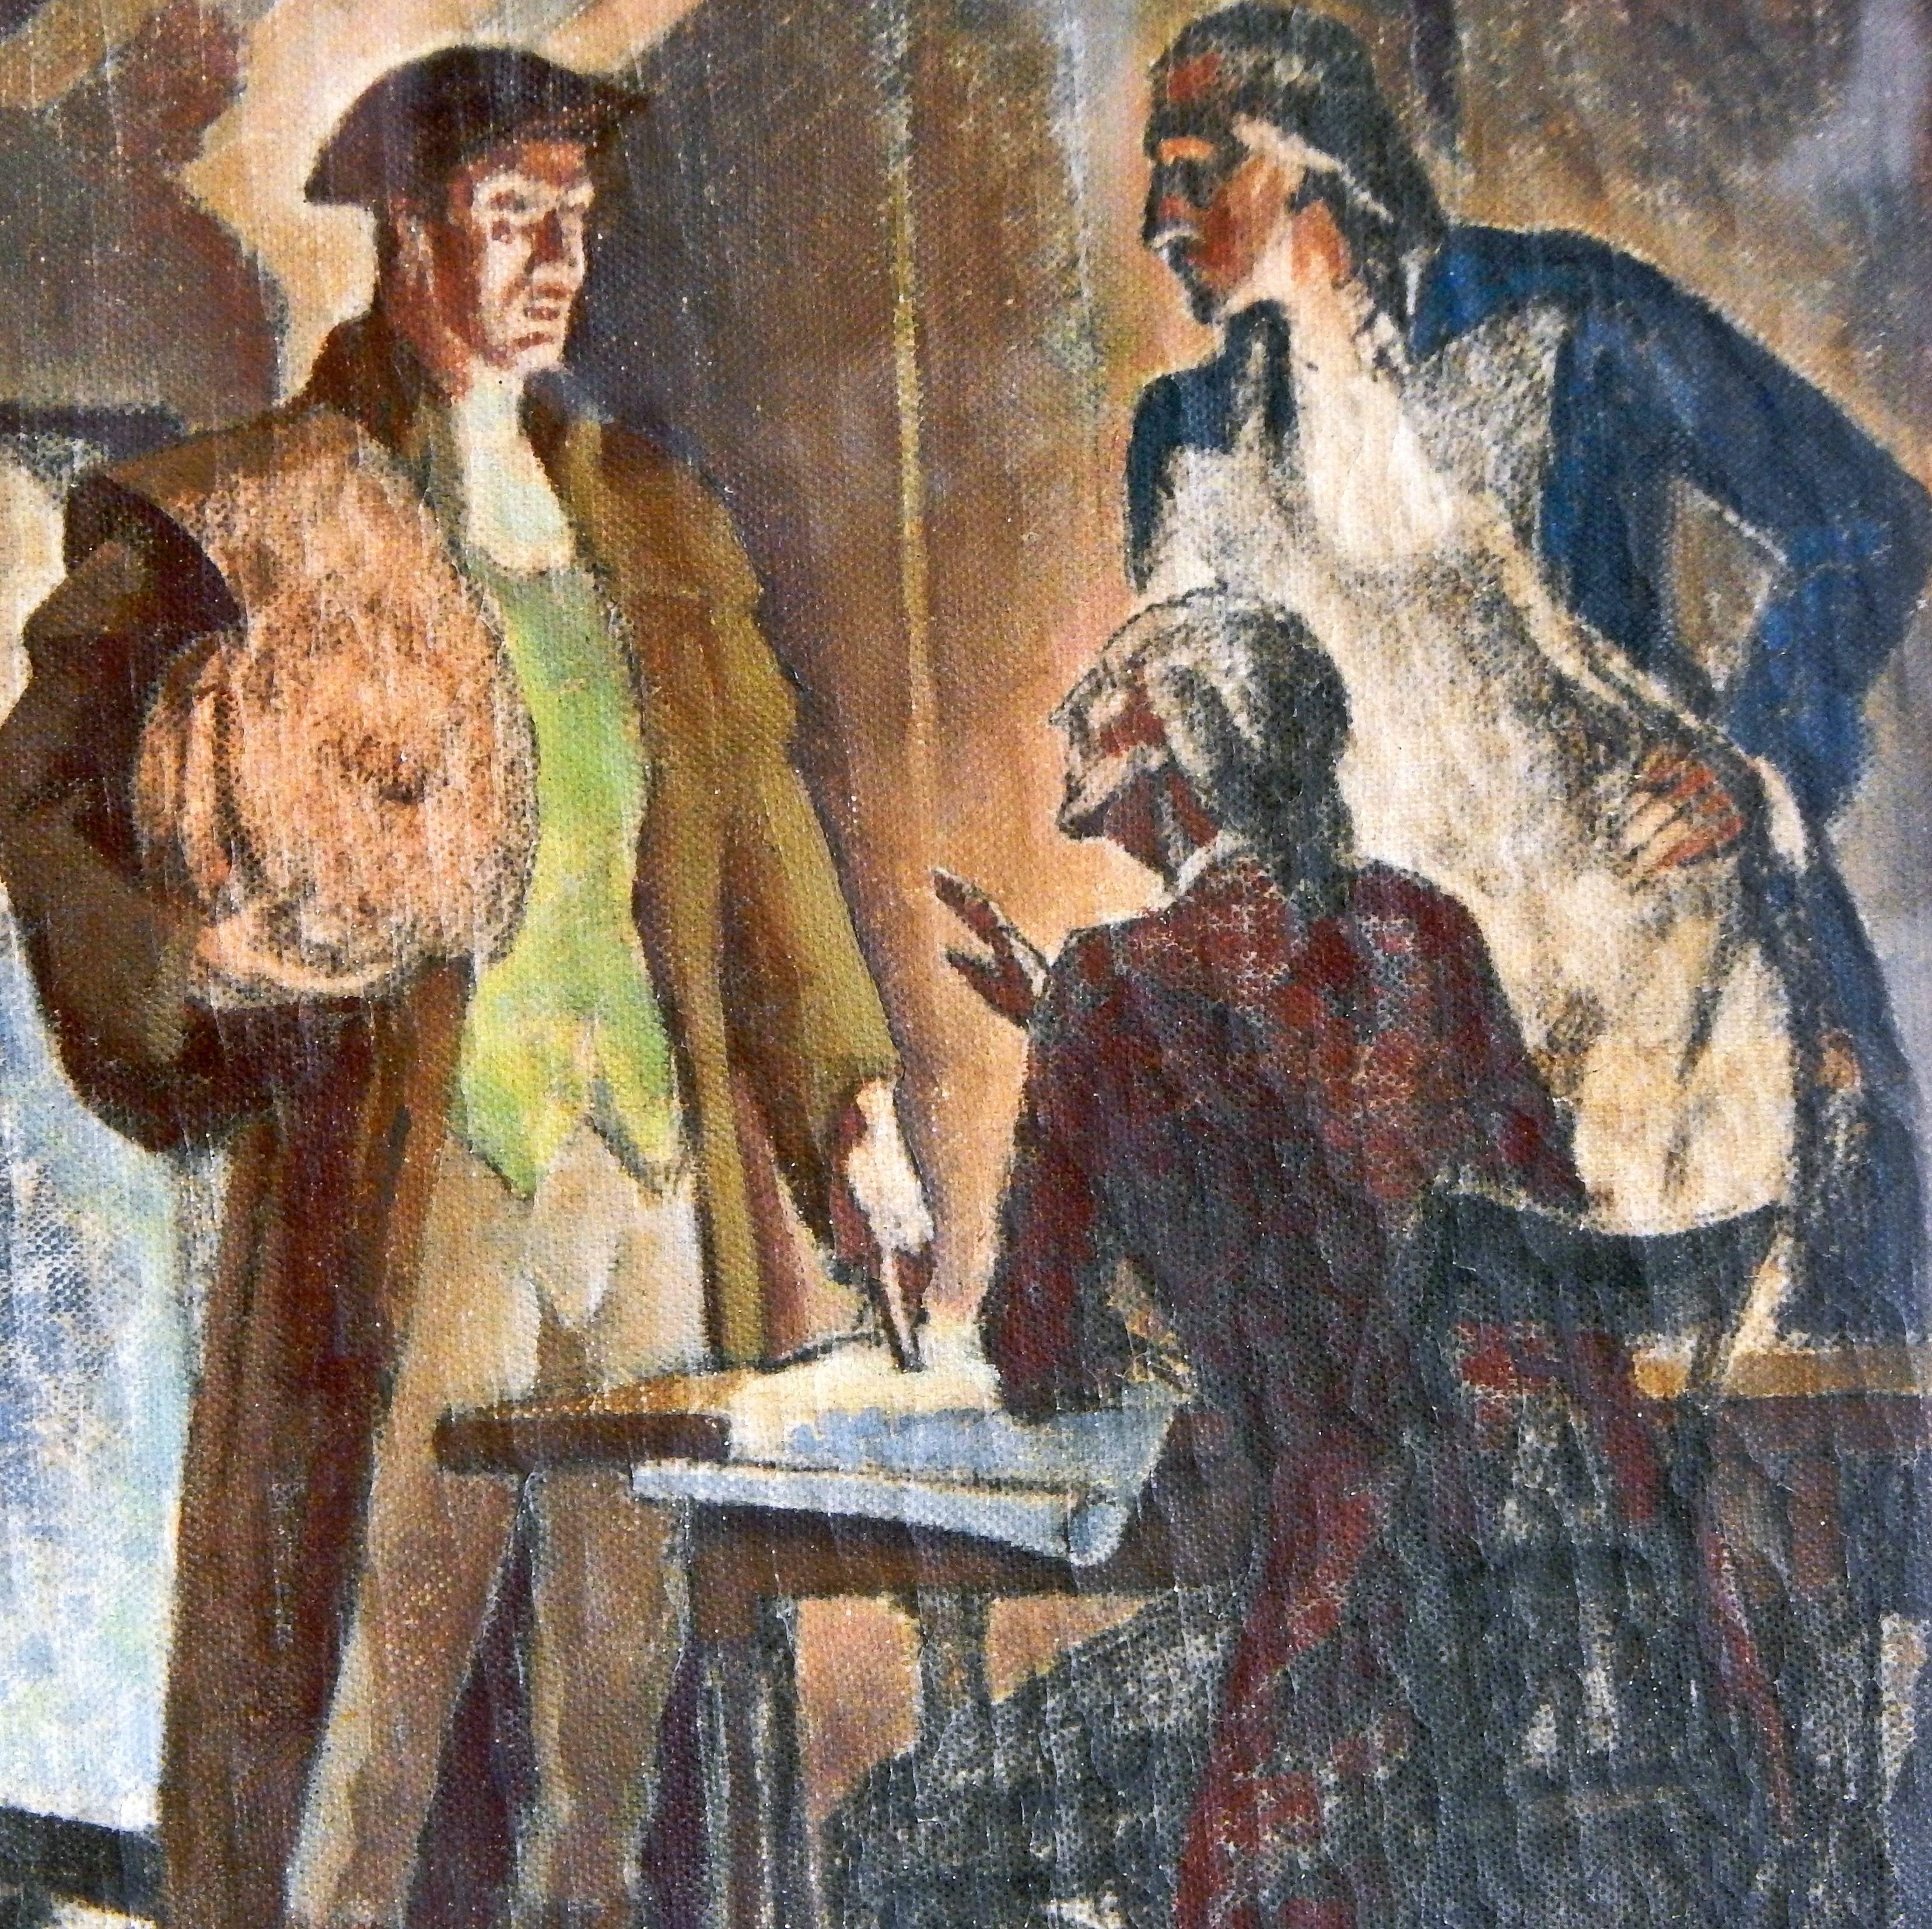 Diese stimmungsvolle, farbenprächtige und dramatische Öl-auf-Leinwand-Studie von Dunbar Beck wurde in Vorbereitung auf sein Gemälde in der Eingangshalle des US Post Office in Danvers, Massachusetts, angefertigt. Bis zu seiner Unabhängigkeit in der